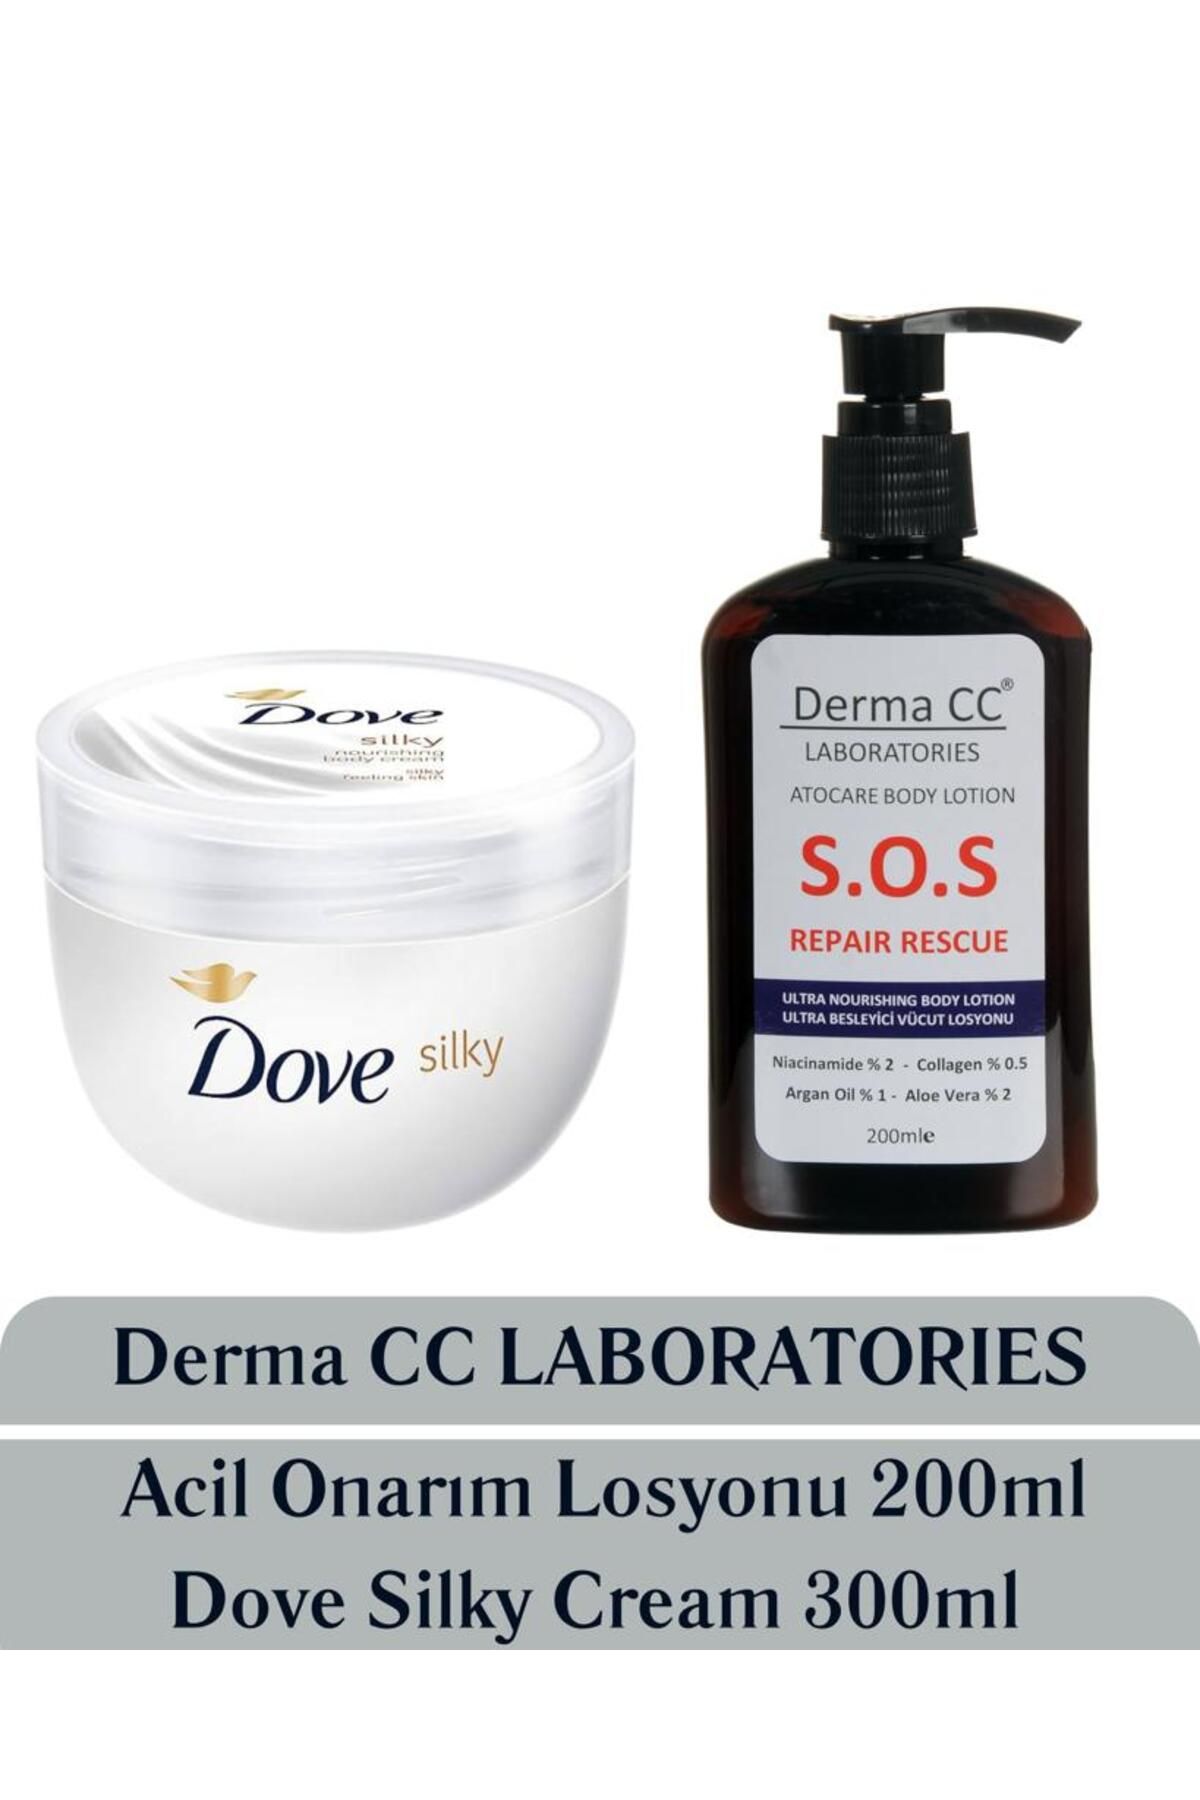 Dove Silky Nourishing Body Cream 300ml + Derma CC LABORATORIES S.O.S Body Lotion 200ml